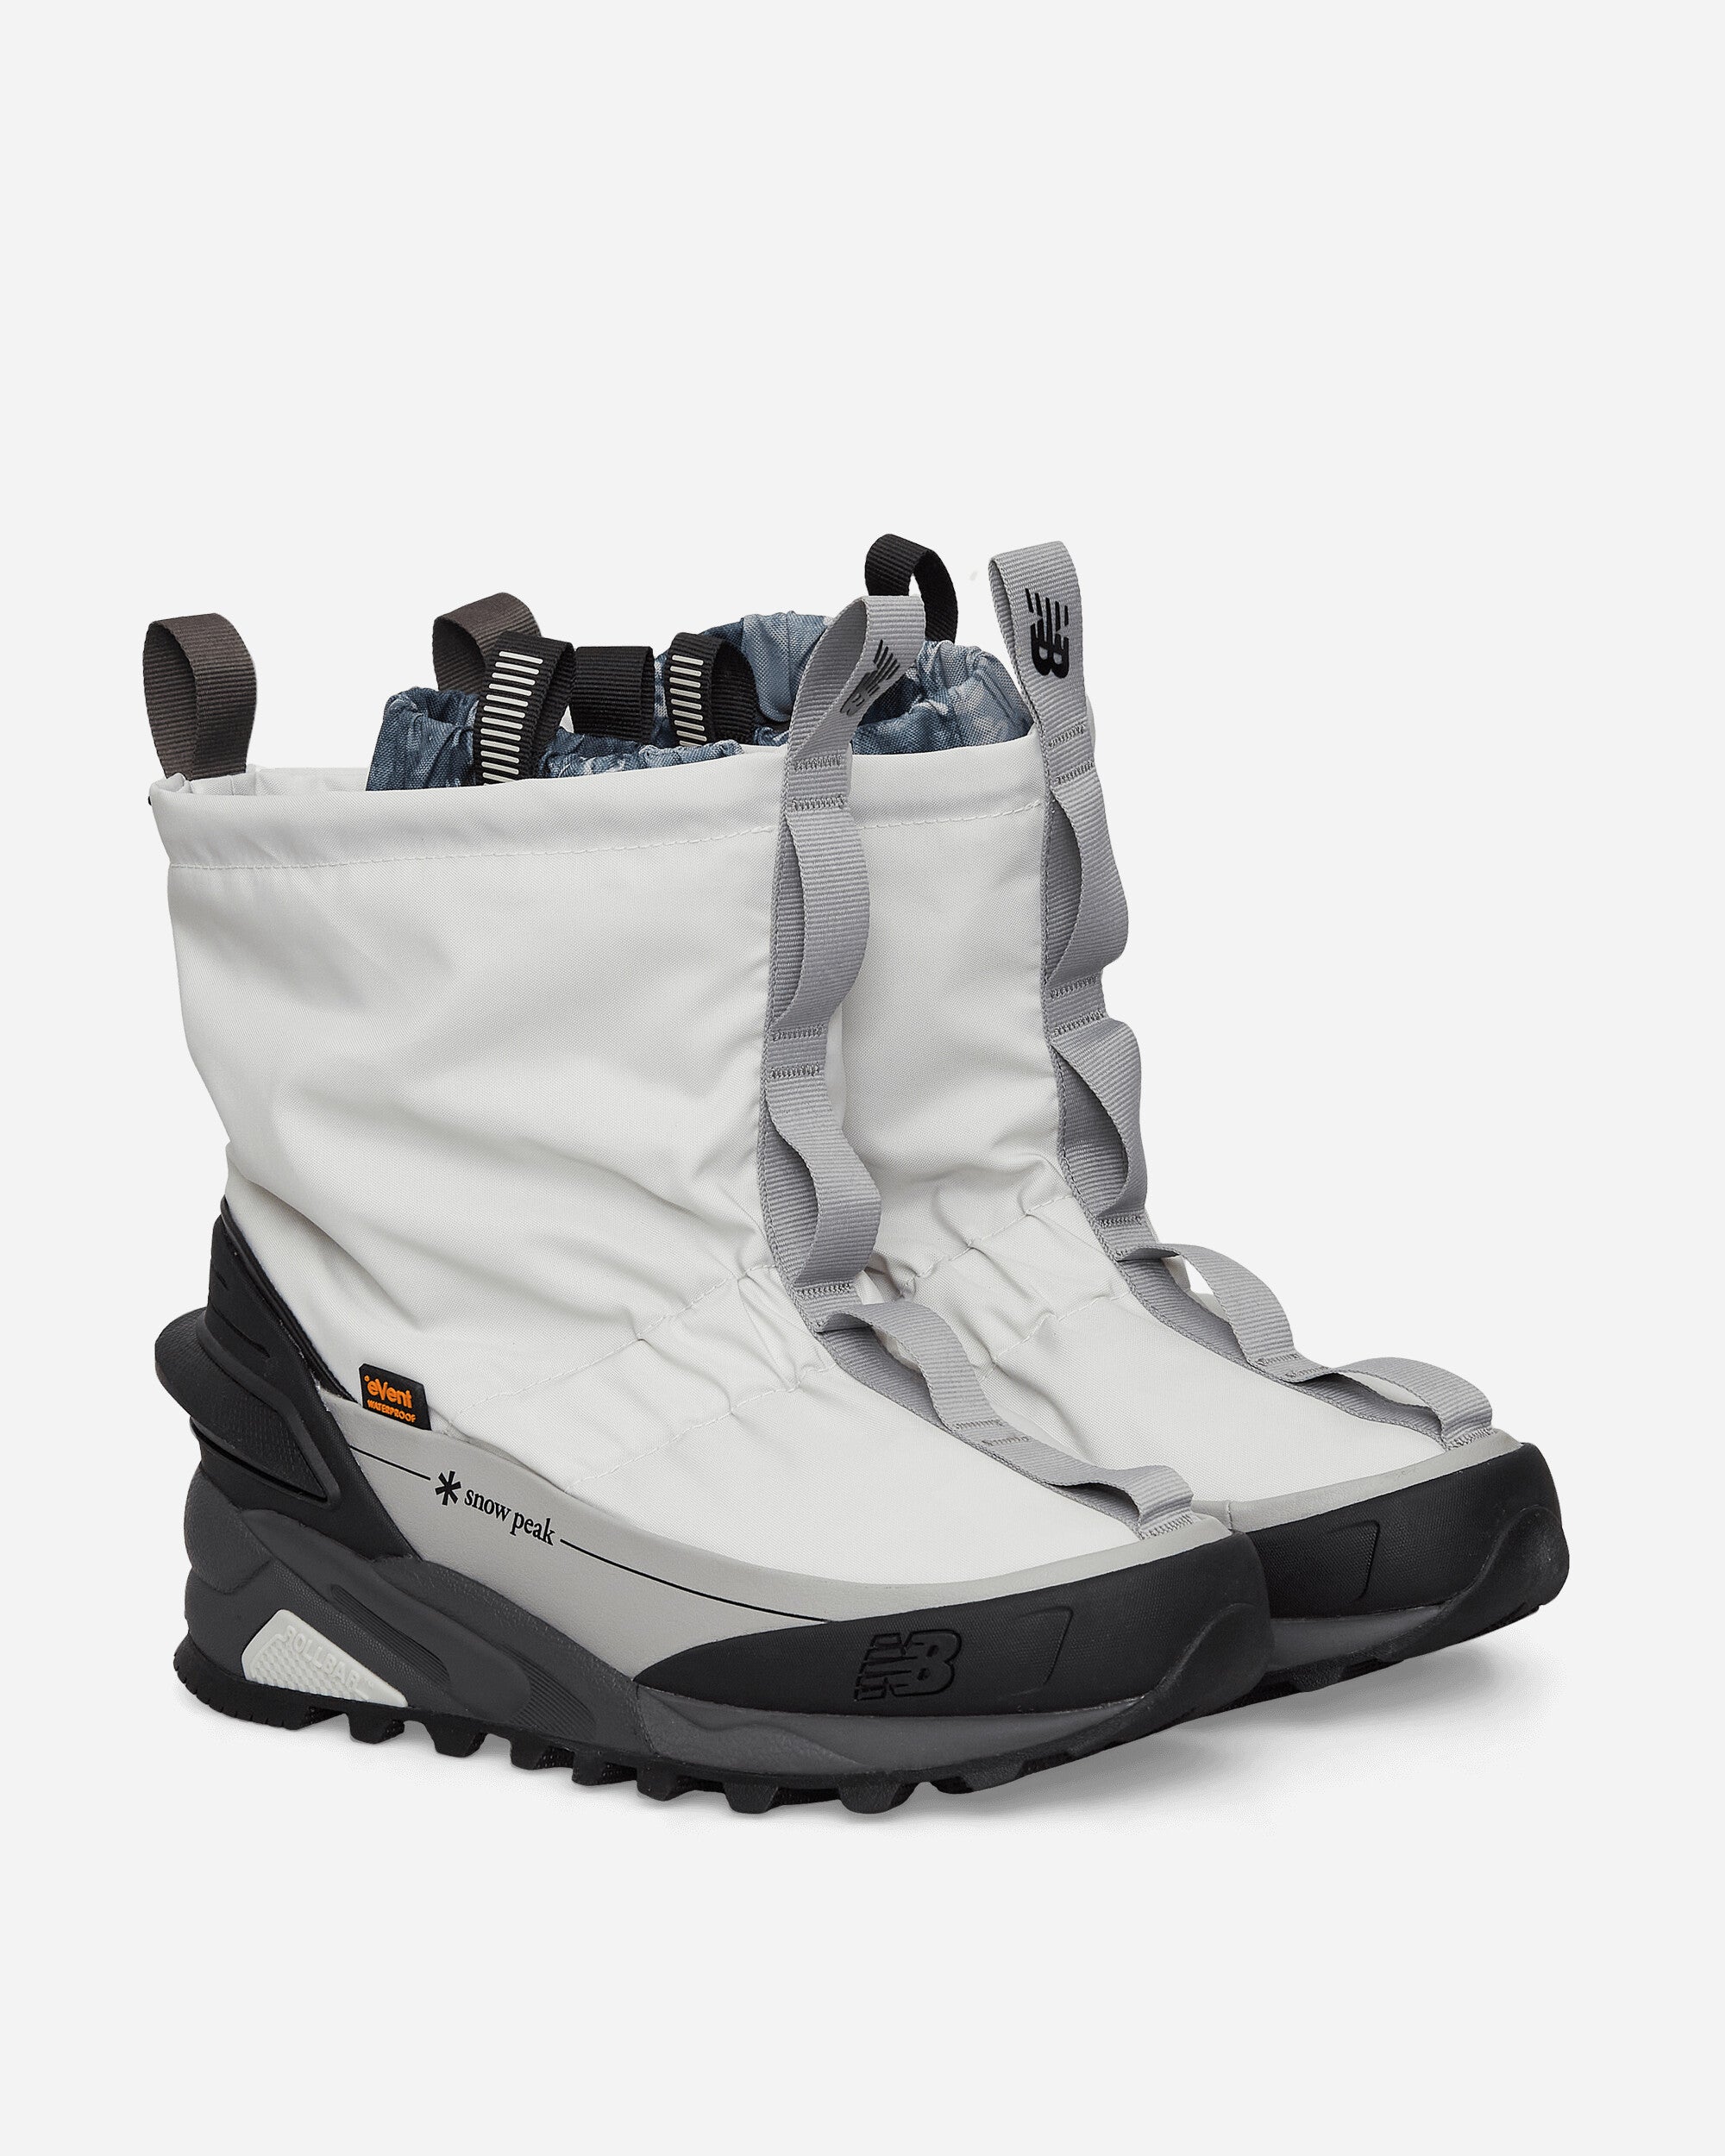 Snow Peak Niobium C_3 Boots White / Grey